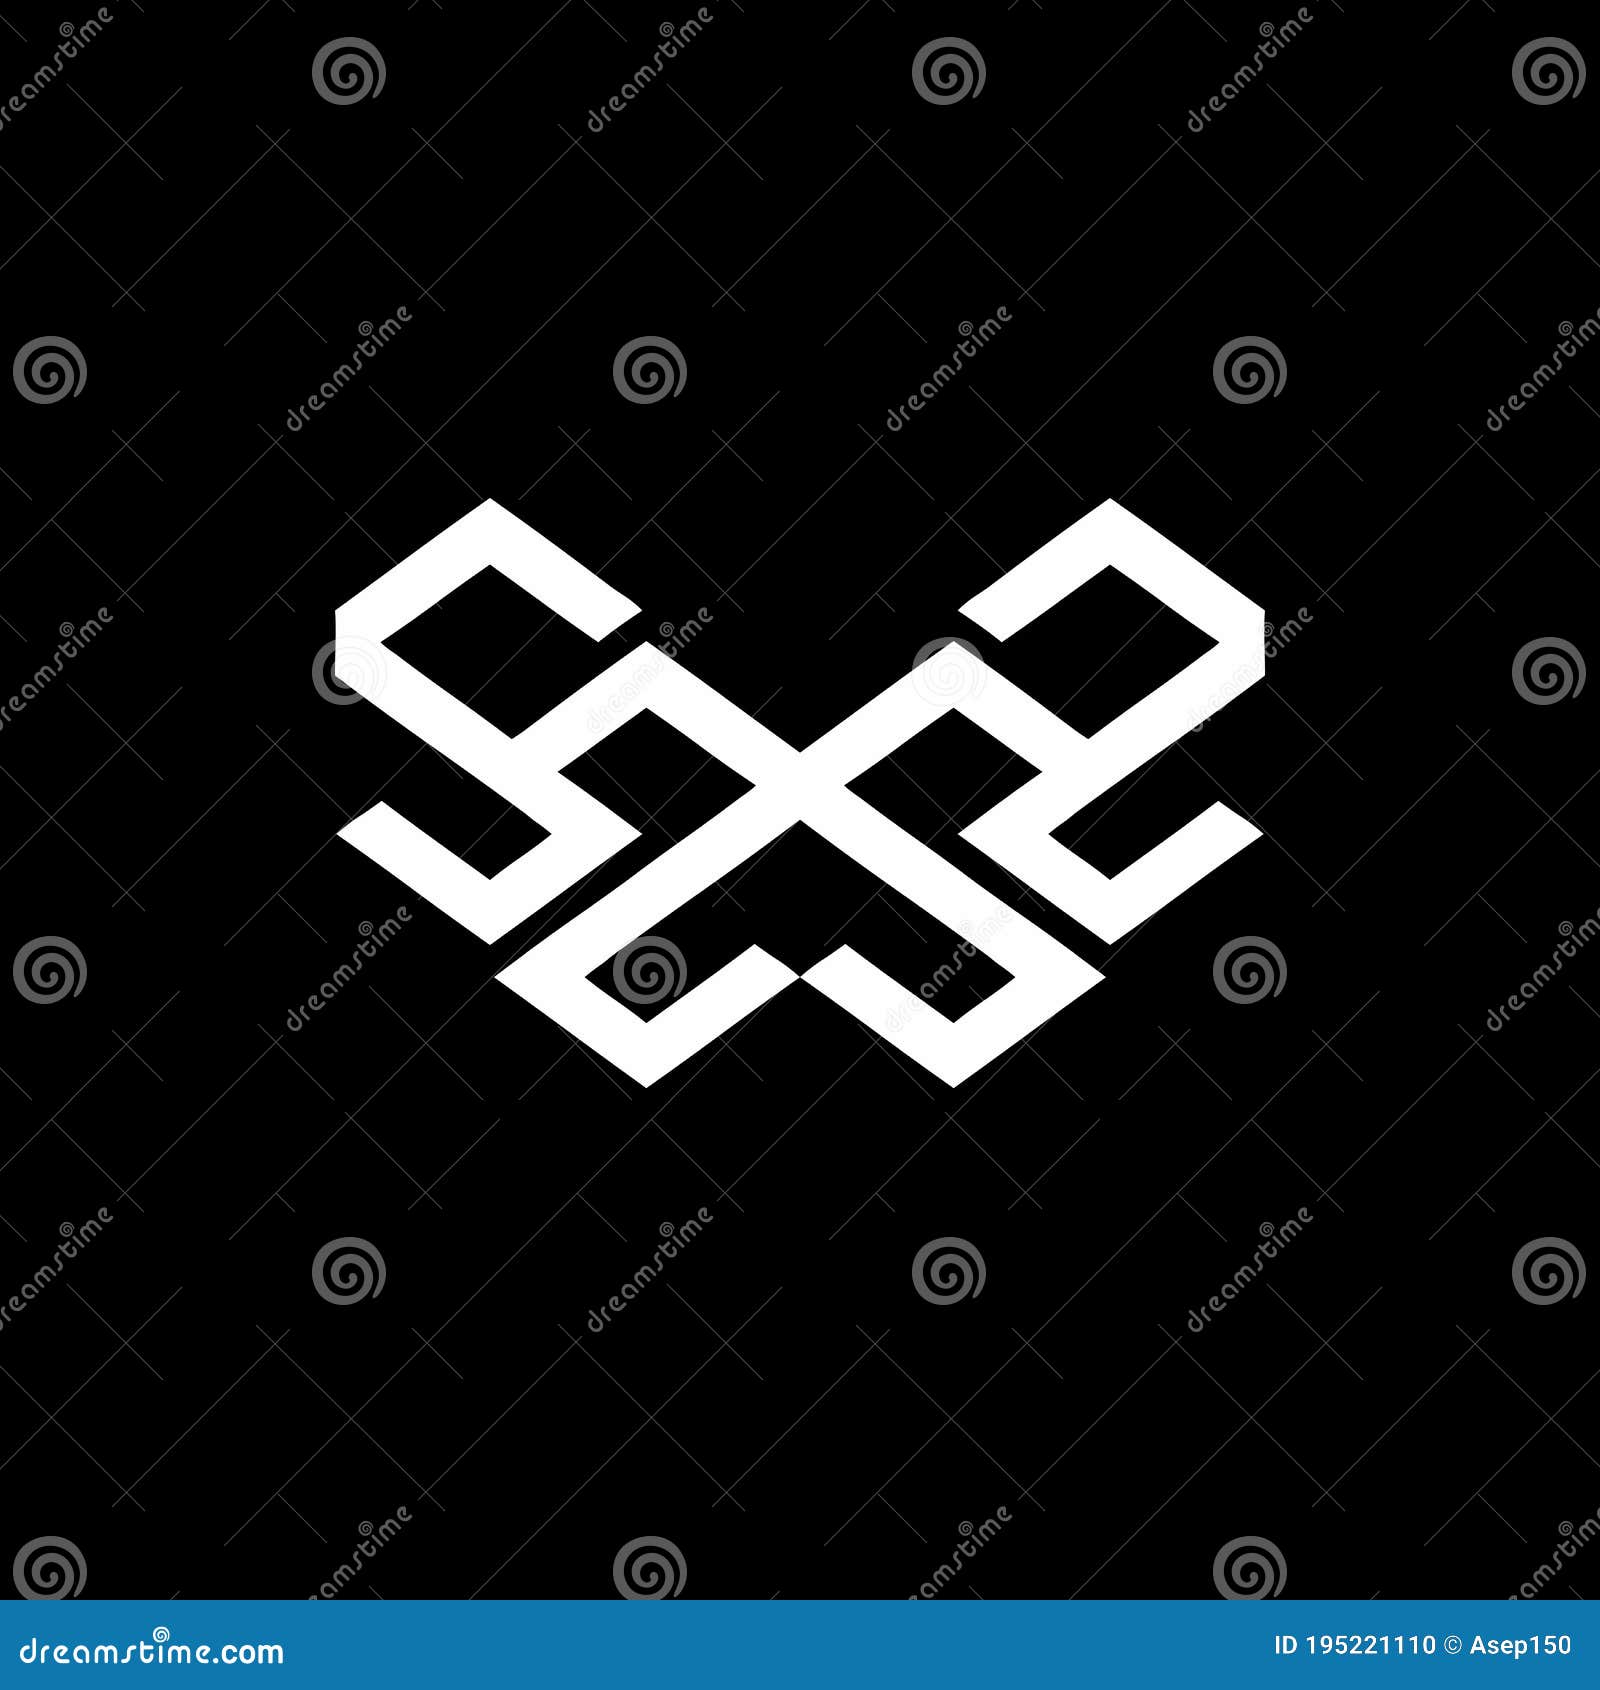 Sz, Ss, Zs, Zz, Swz, Smz, Sms, Zmz Initials Geometrical Logo and Vector ...